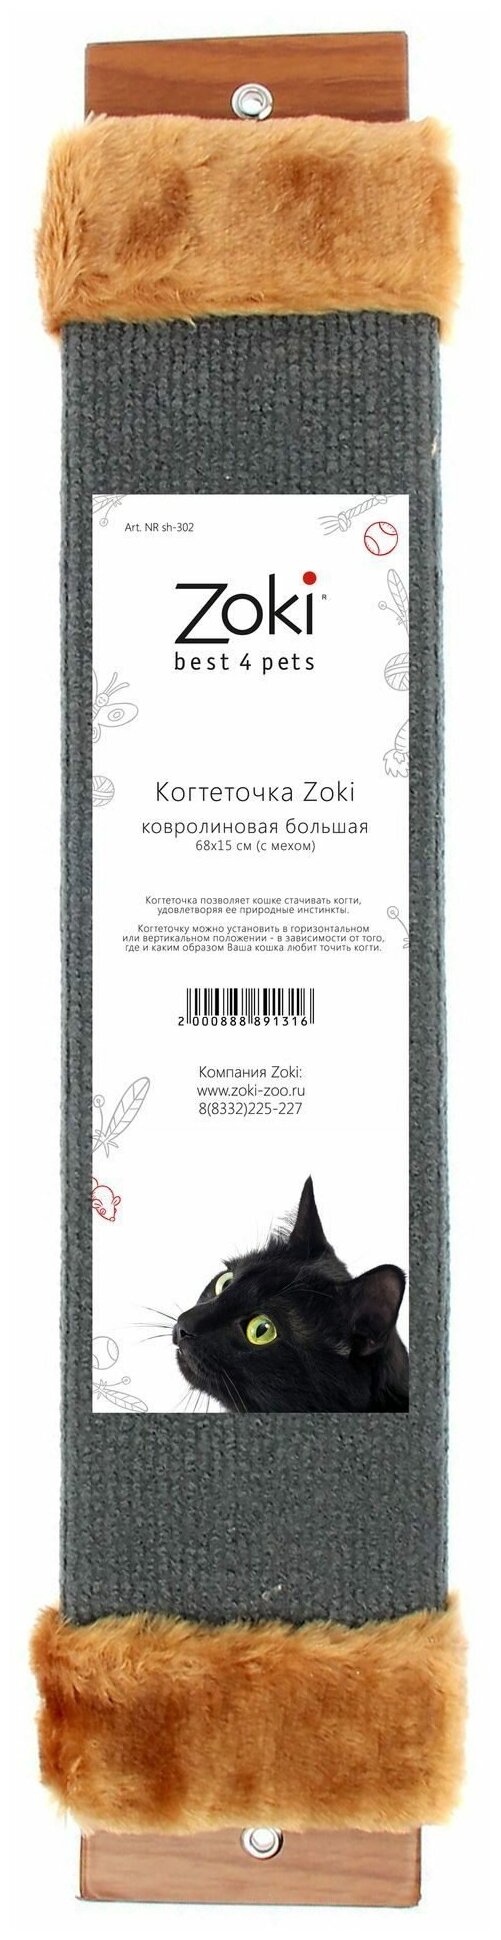 Когтеточка Zoki (Зоки) ковролиновая большая мех. А302 68*15см